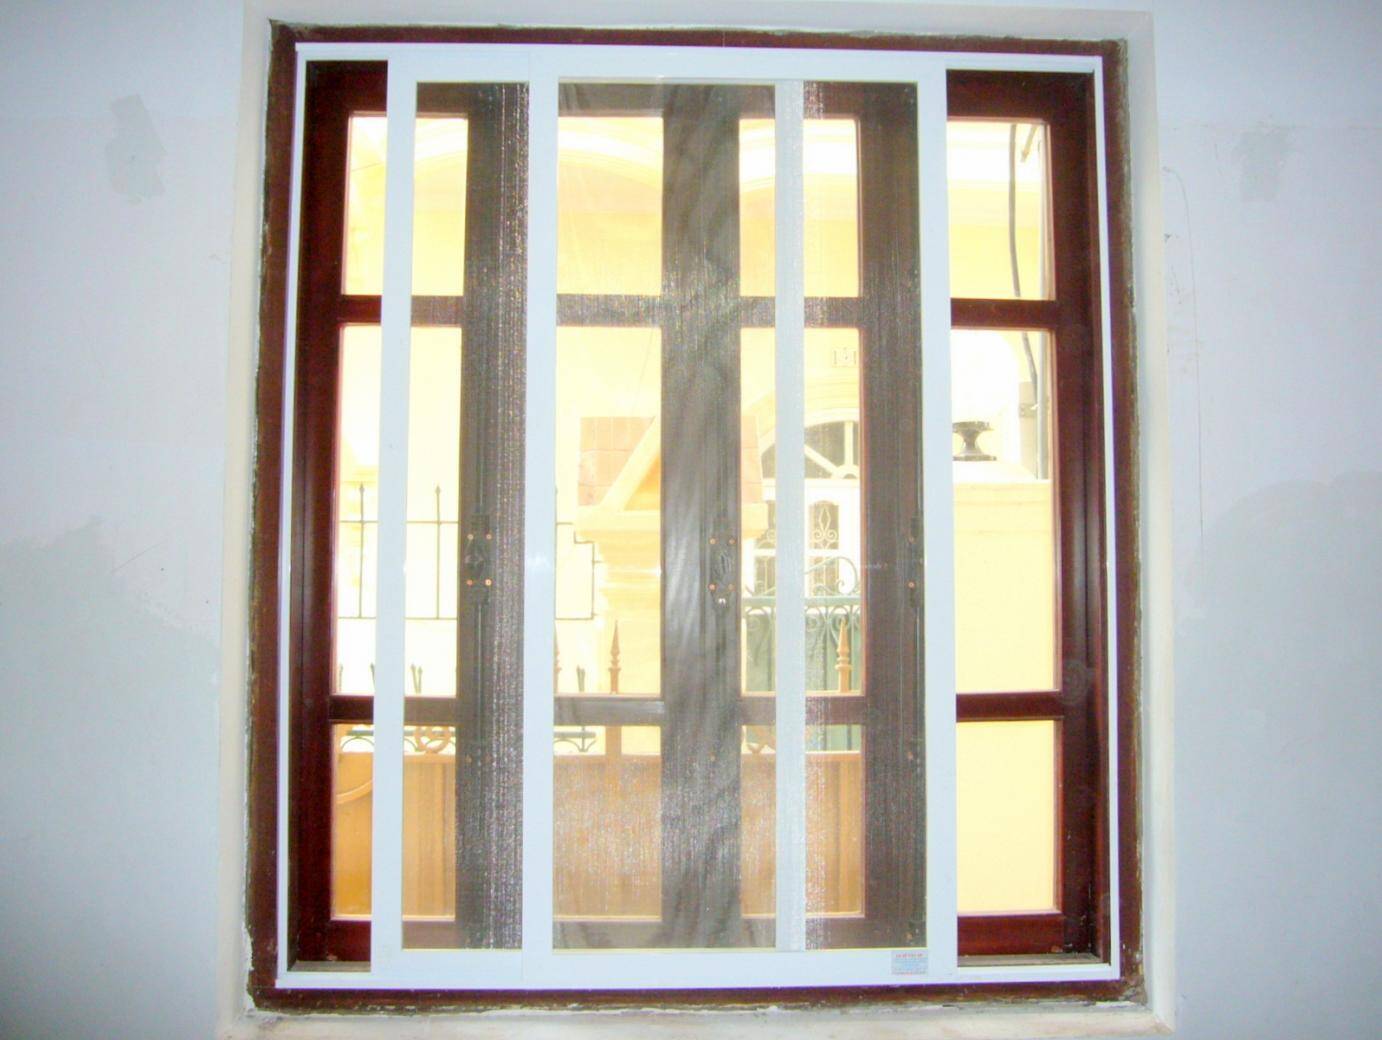  Cửa sổ cũng có thể được lắp đặt cửa lưới để tăng khả năng chống muỗi